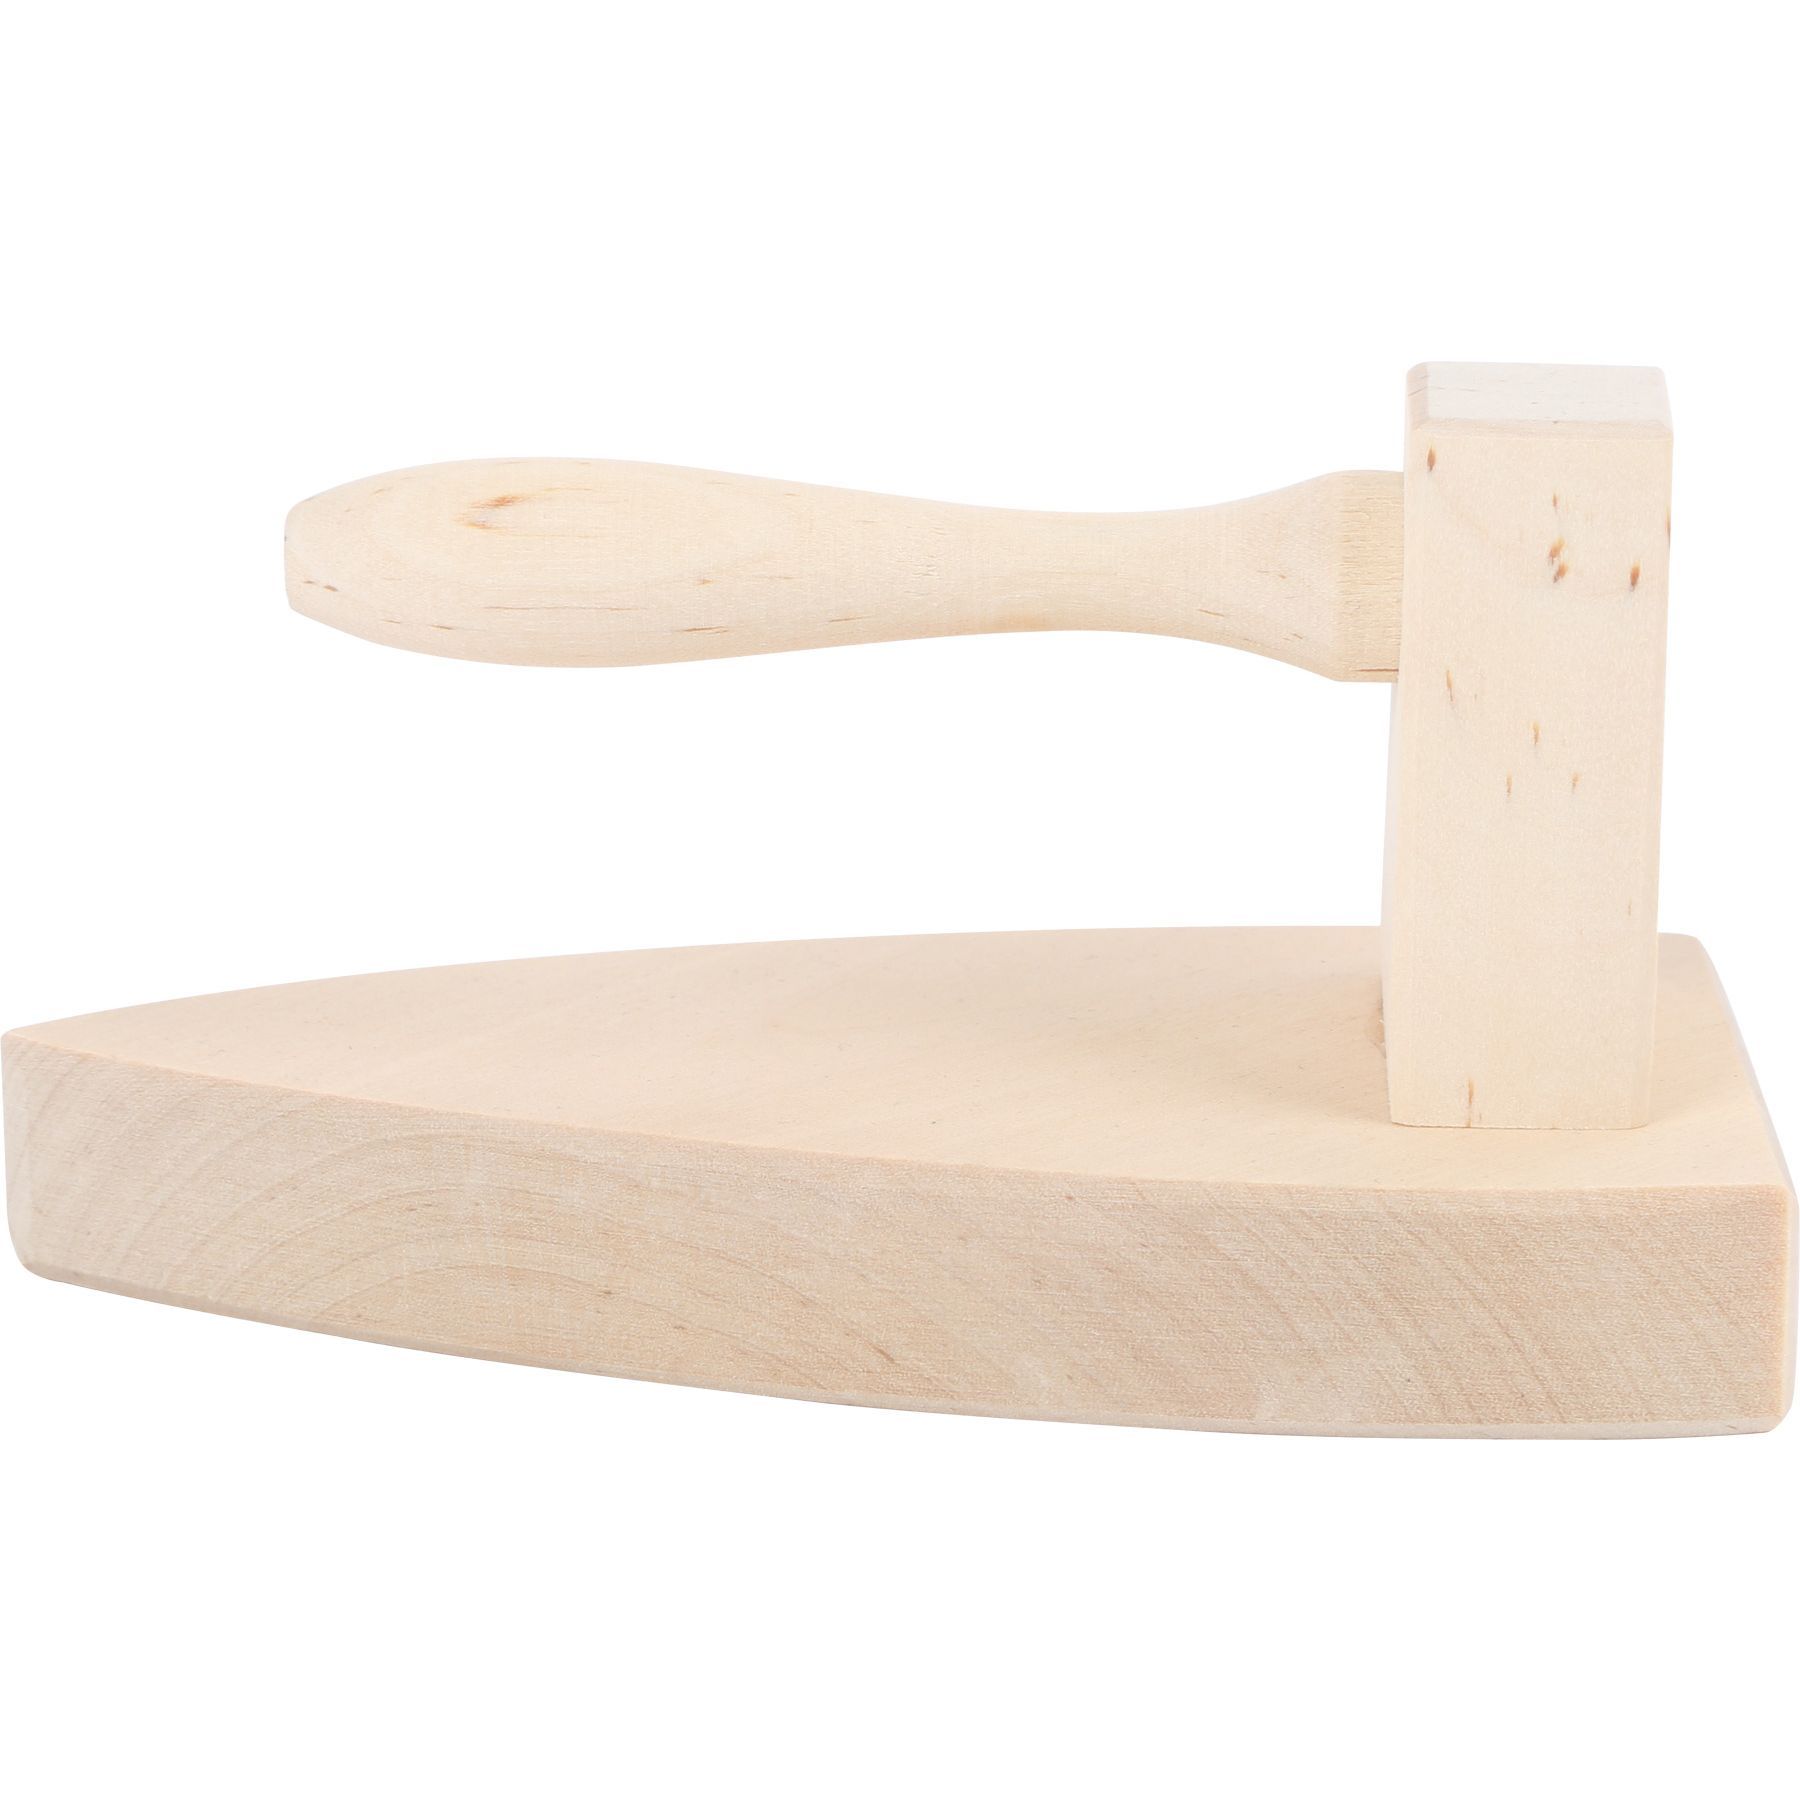 Tabla de Planchar - Juguete de madera - Shopmami